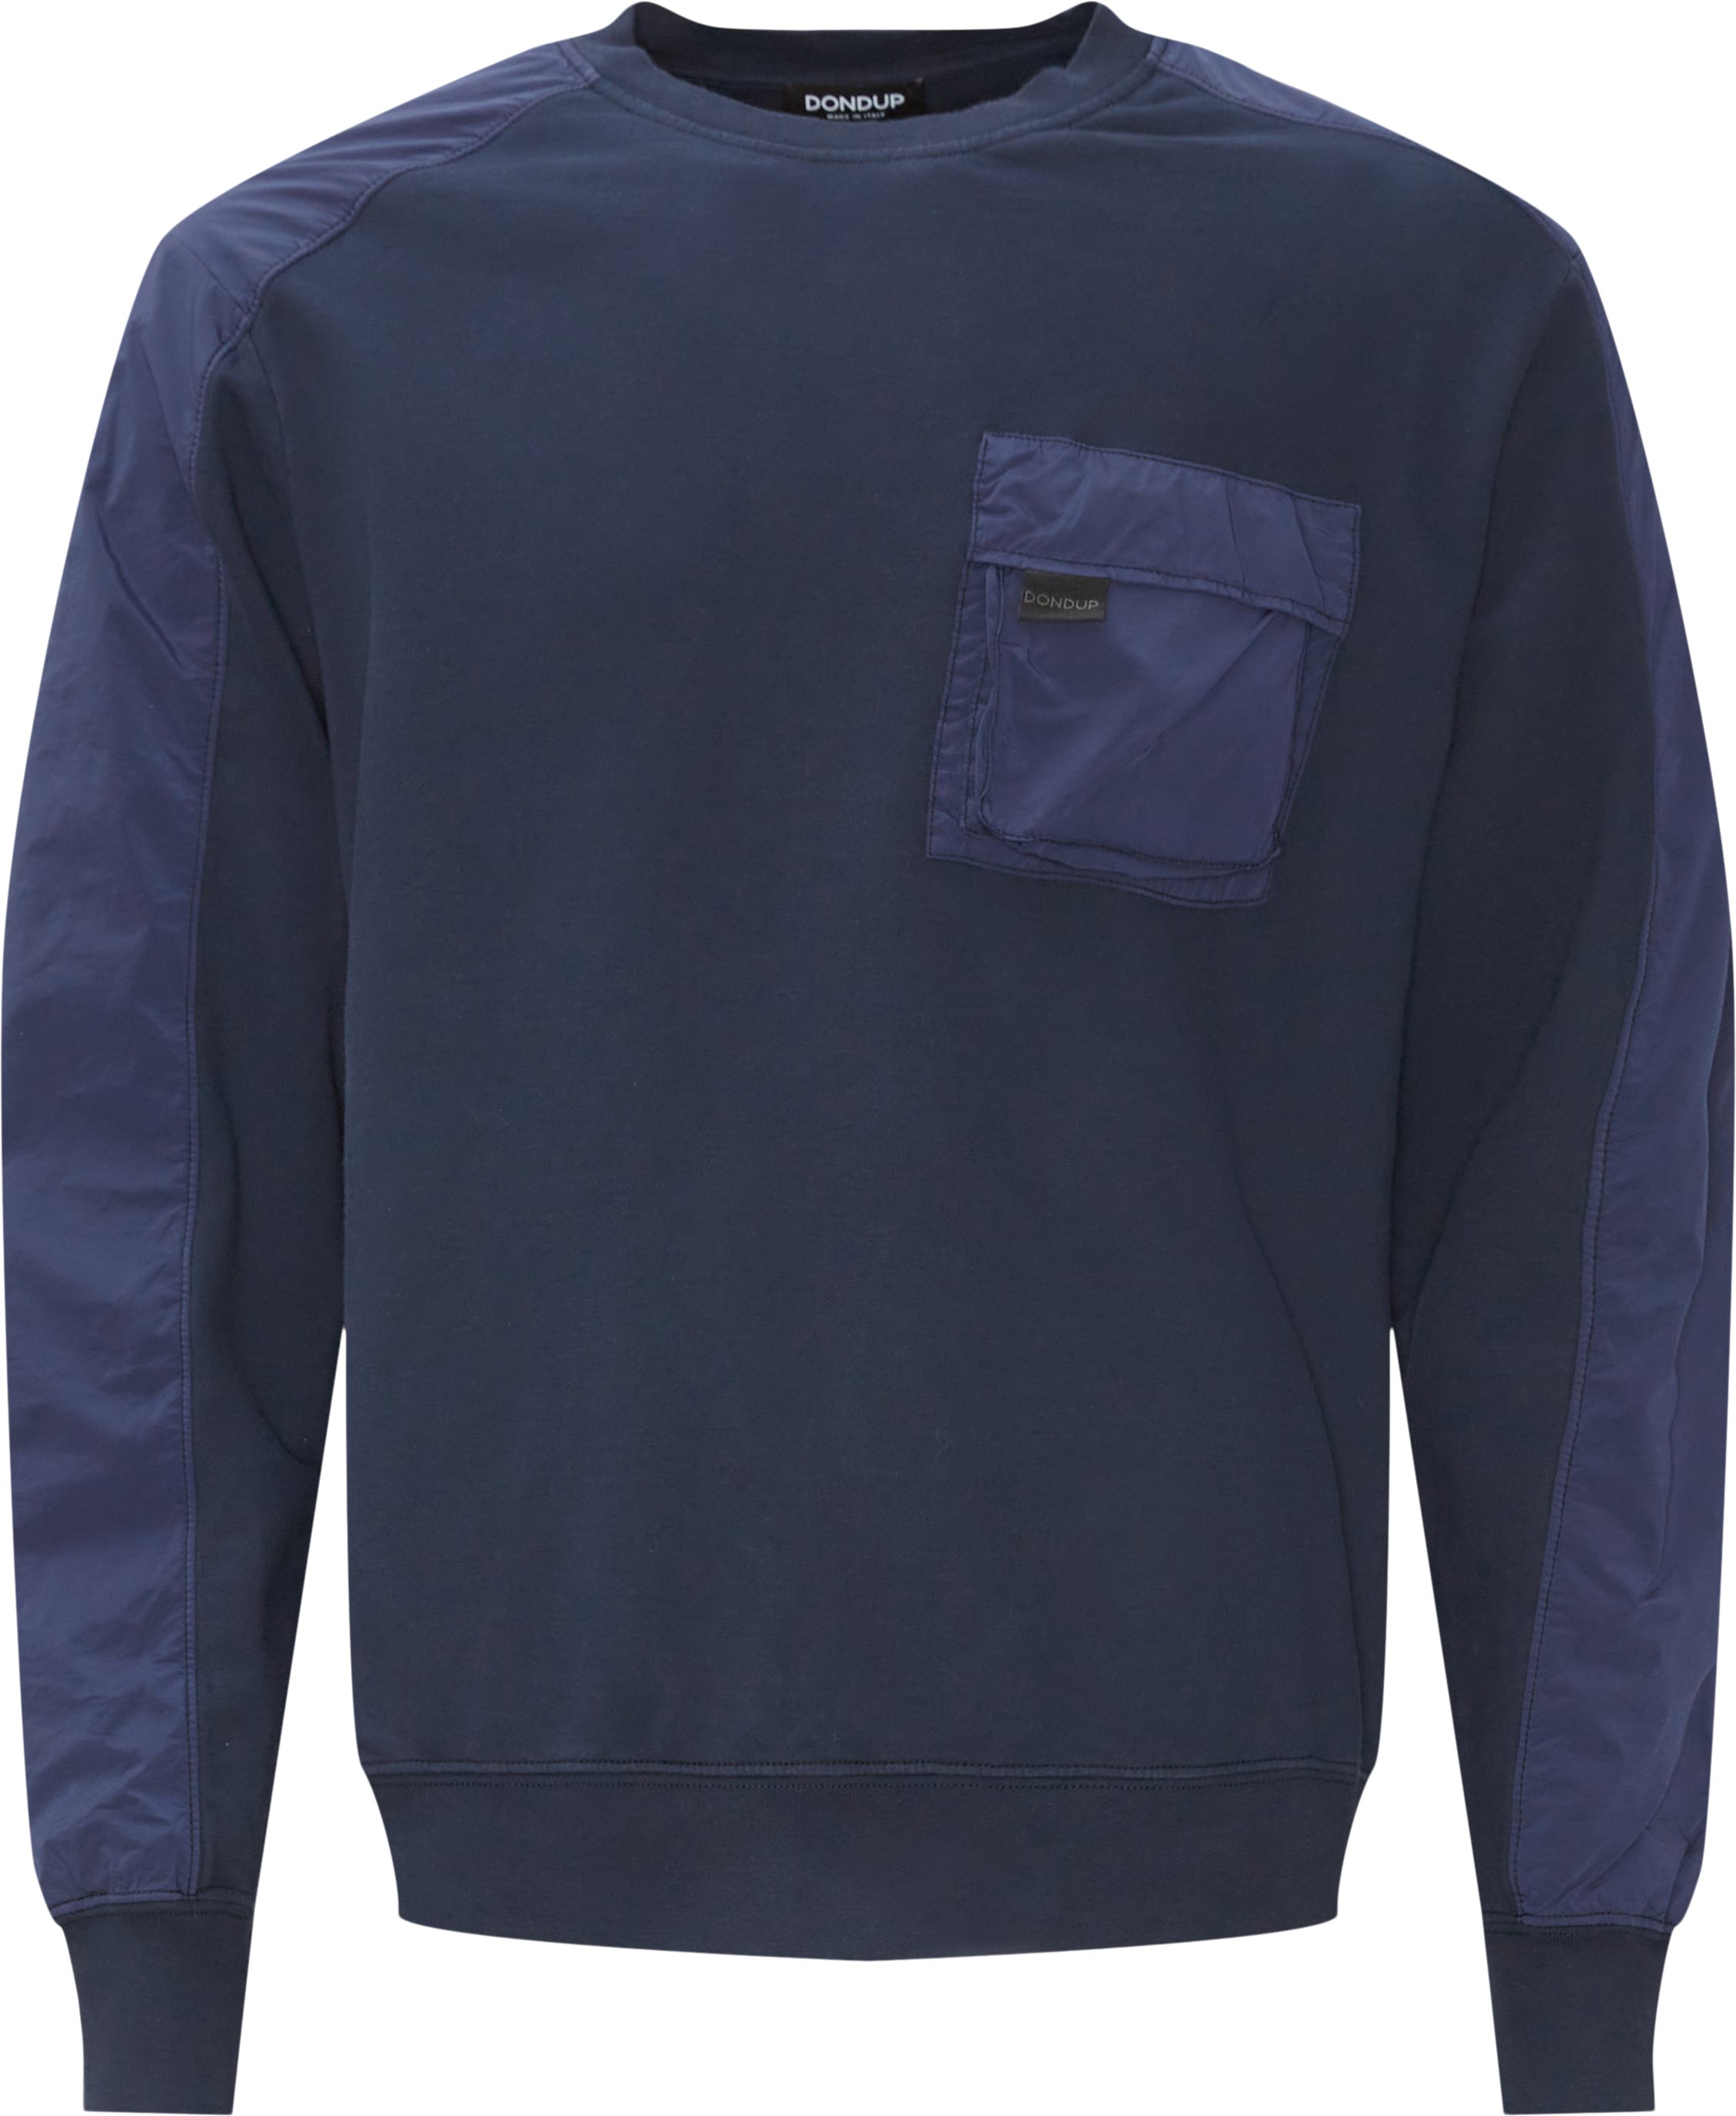 Dondup Sweatshirts UF640 KF199 N Blue